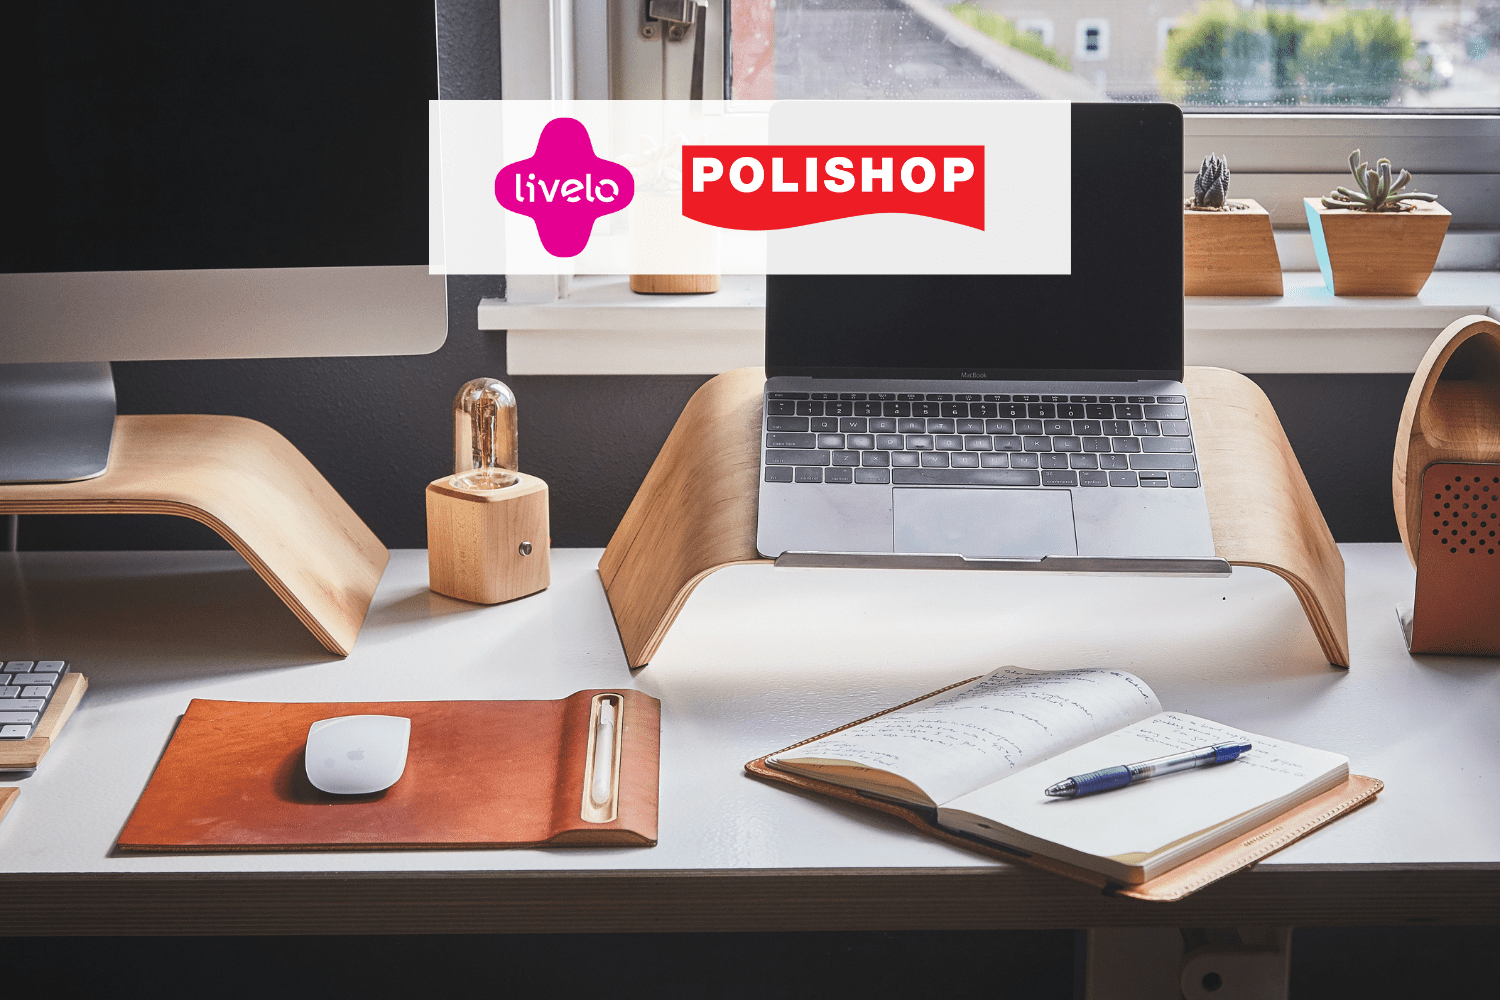 mesa de escritório com notebook, caderno e logo Livelo e Polishop 10 pontos Livelo